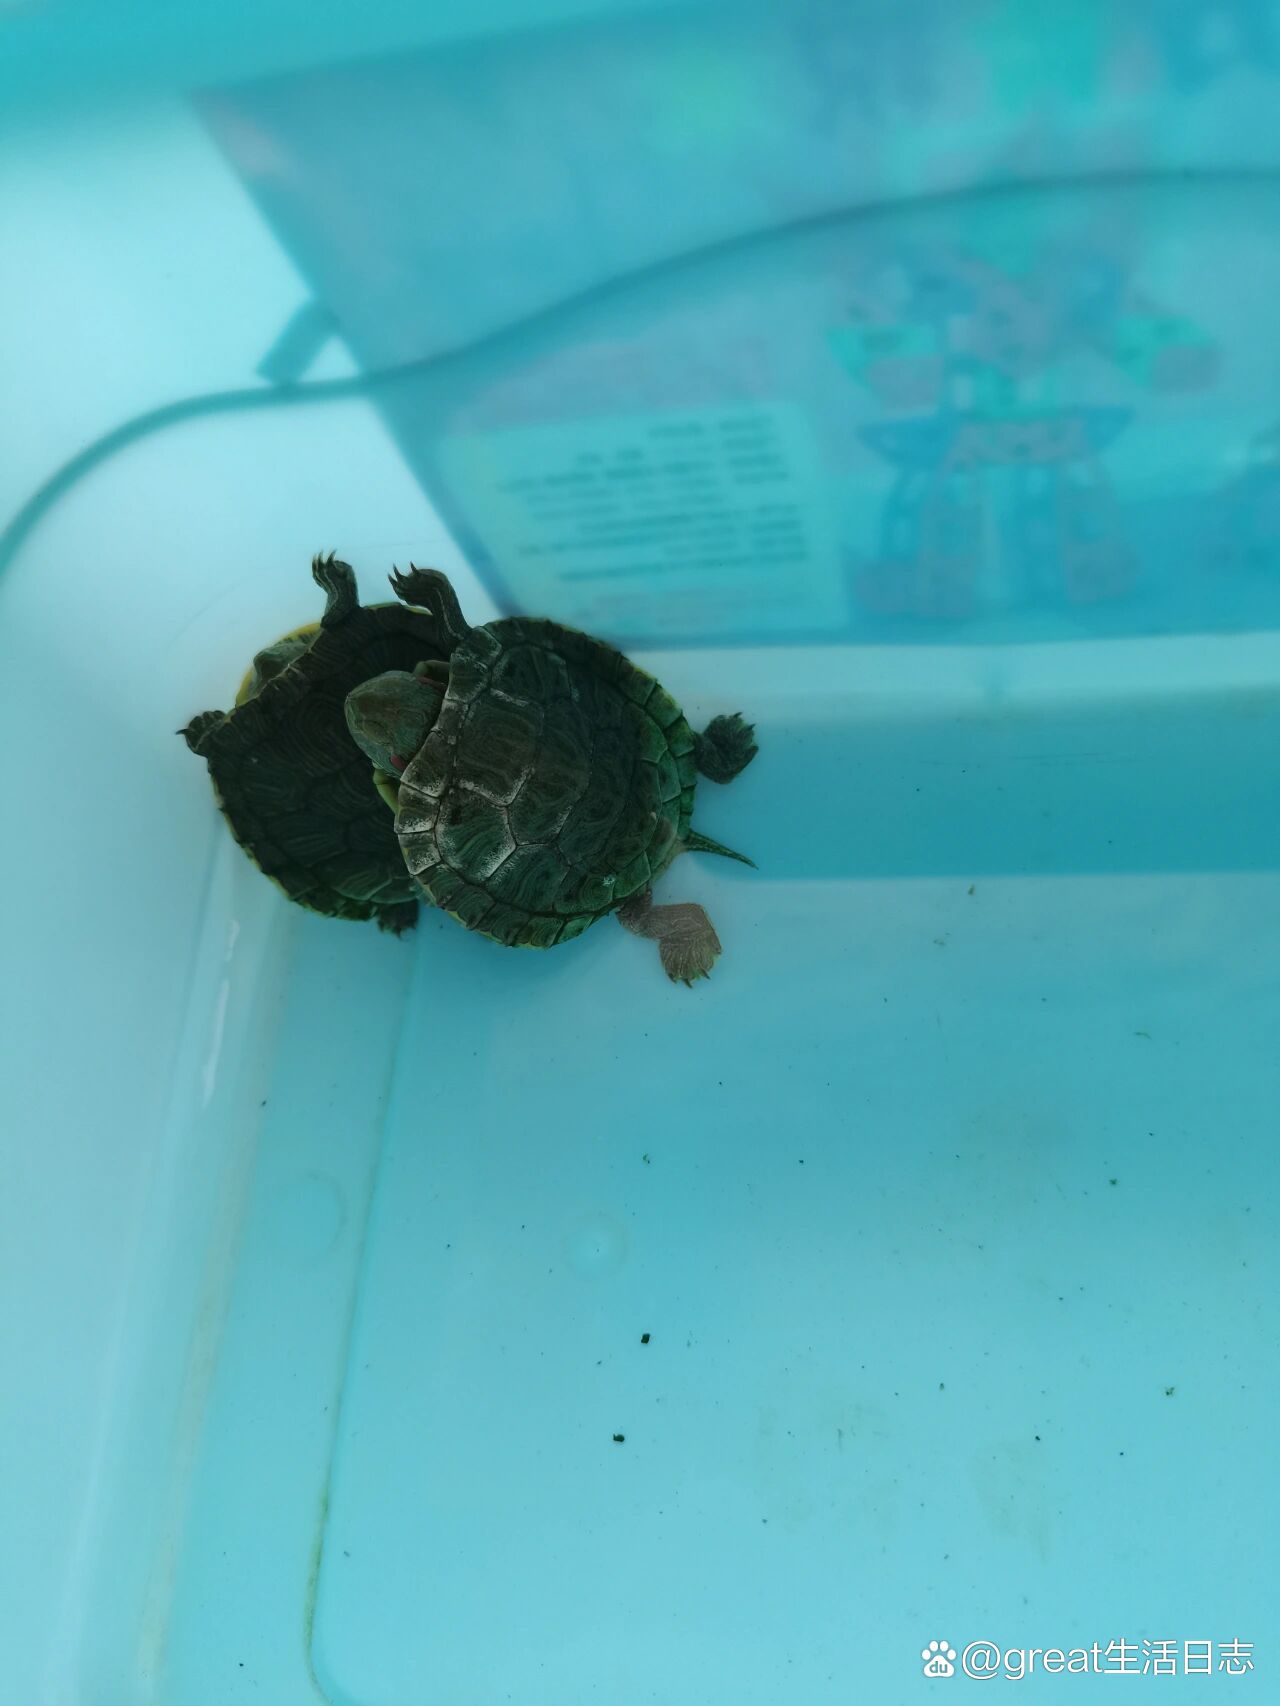 小乌龟龟壳发白,还变软了,怎么办?